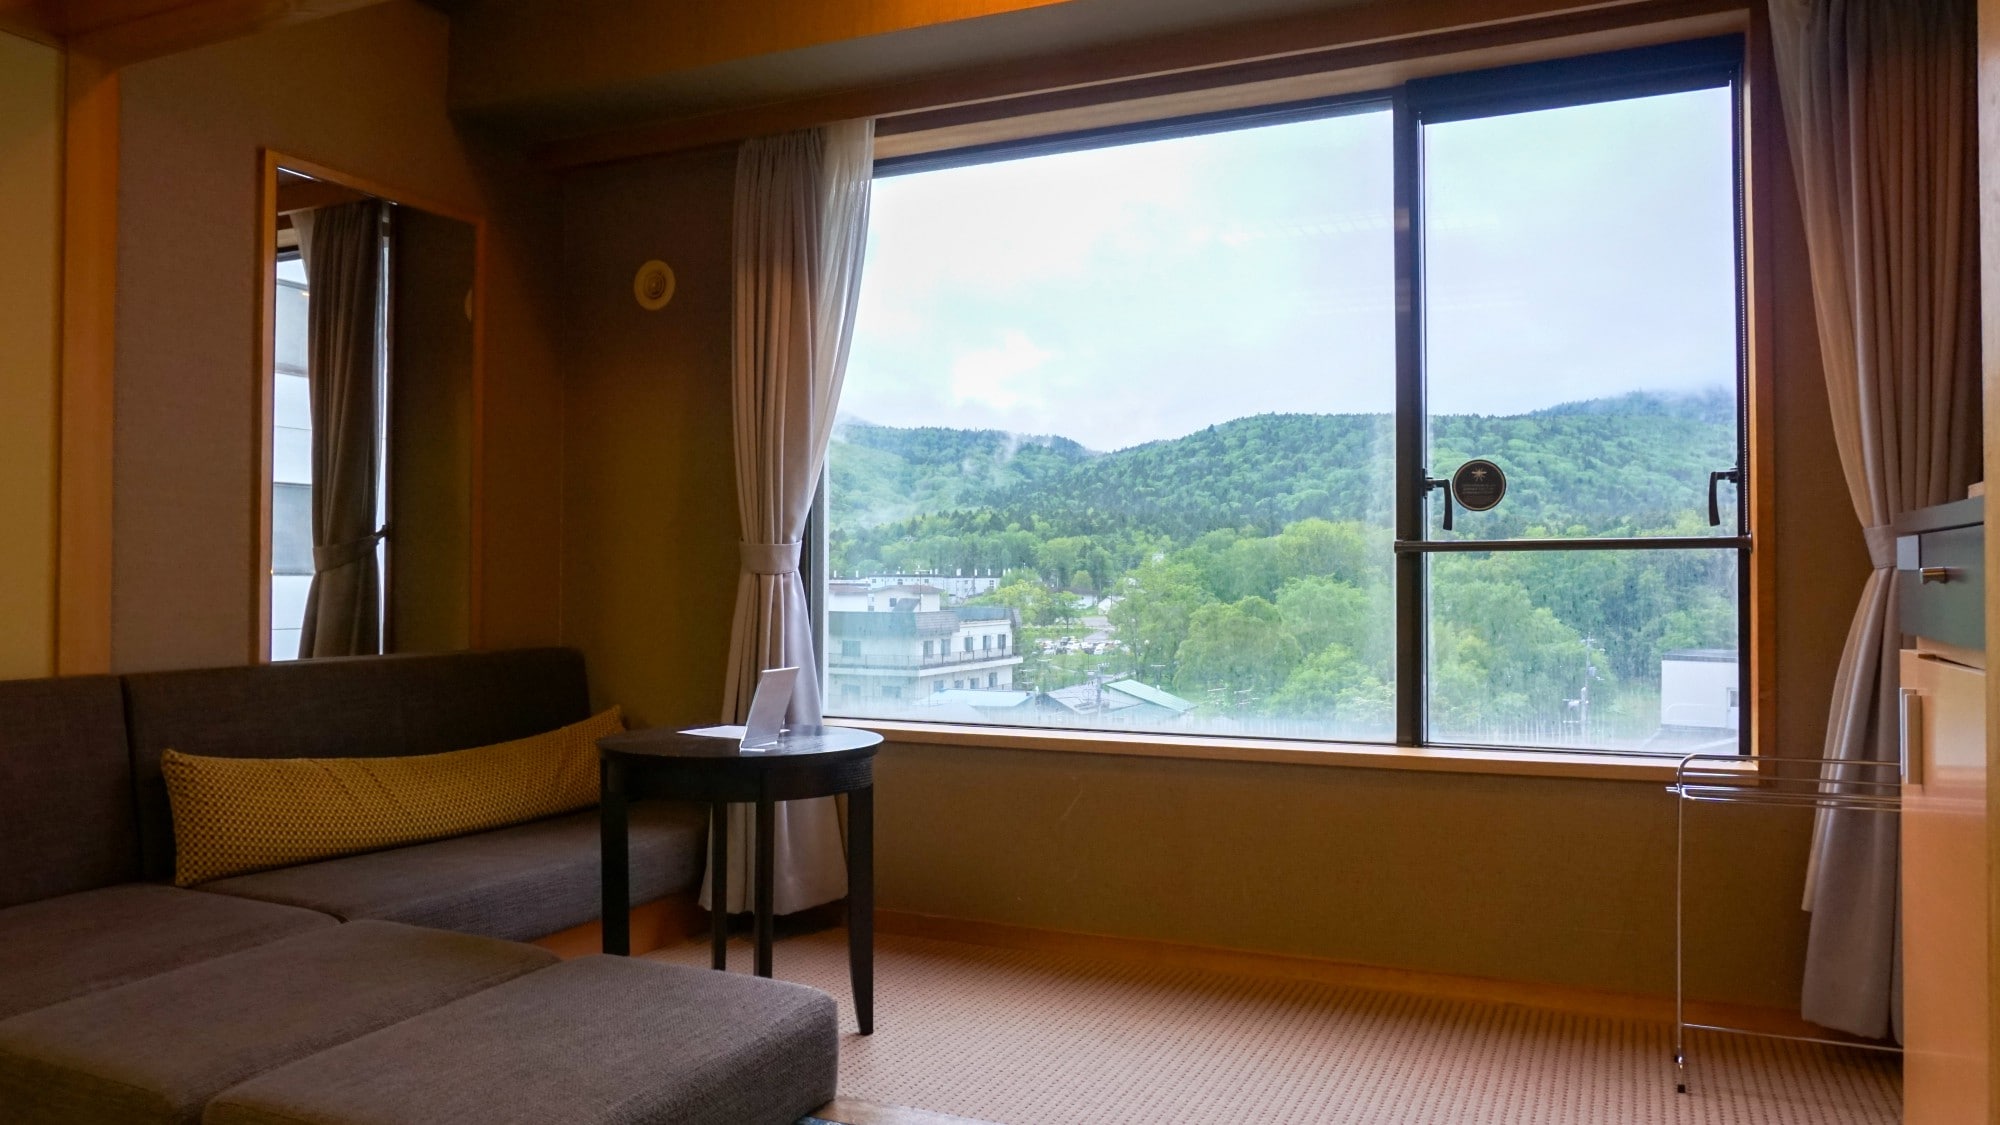 [ฝั่งภูเขา] ห้องเตียงแฝดสไตล์ญี่ปุ่น (มีอ่างอาบน้ำ) / โซฟาสำหรับดื่มกาแฟหรือพักผ่อนริมหน้าต่าง (ภาพ)